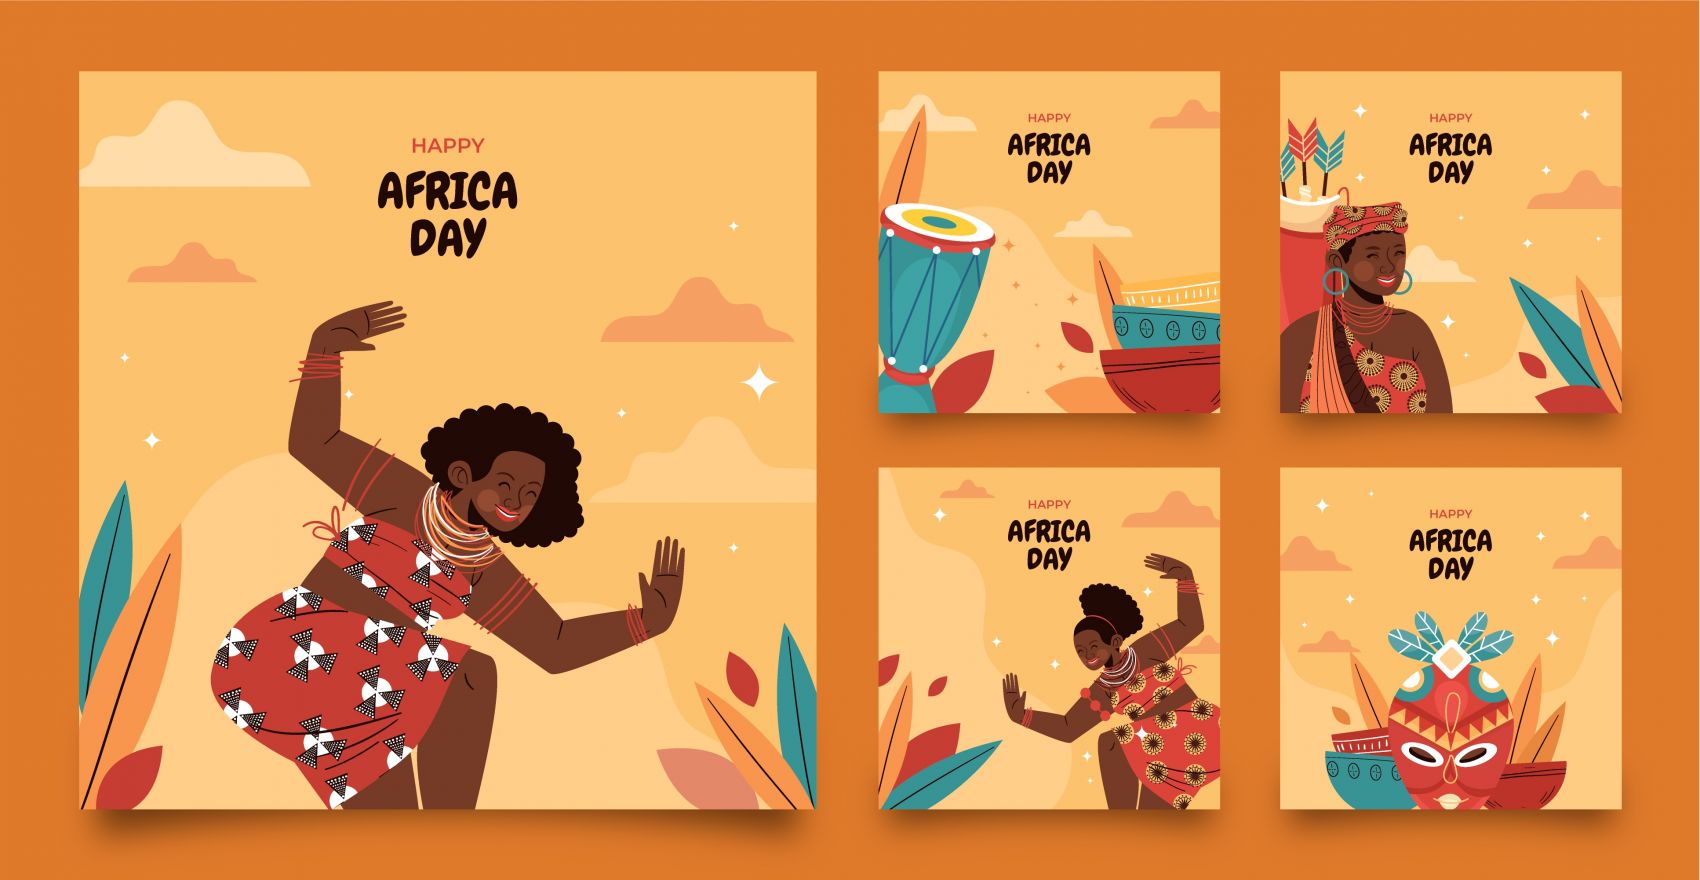 非洲民族舞蹈插图 向量例证. 插画 包括有 活动家, 舞蹈演员, 文化, 礼服, 要素, 急性, 伙计 - 206016976